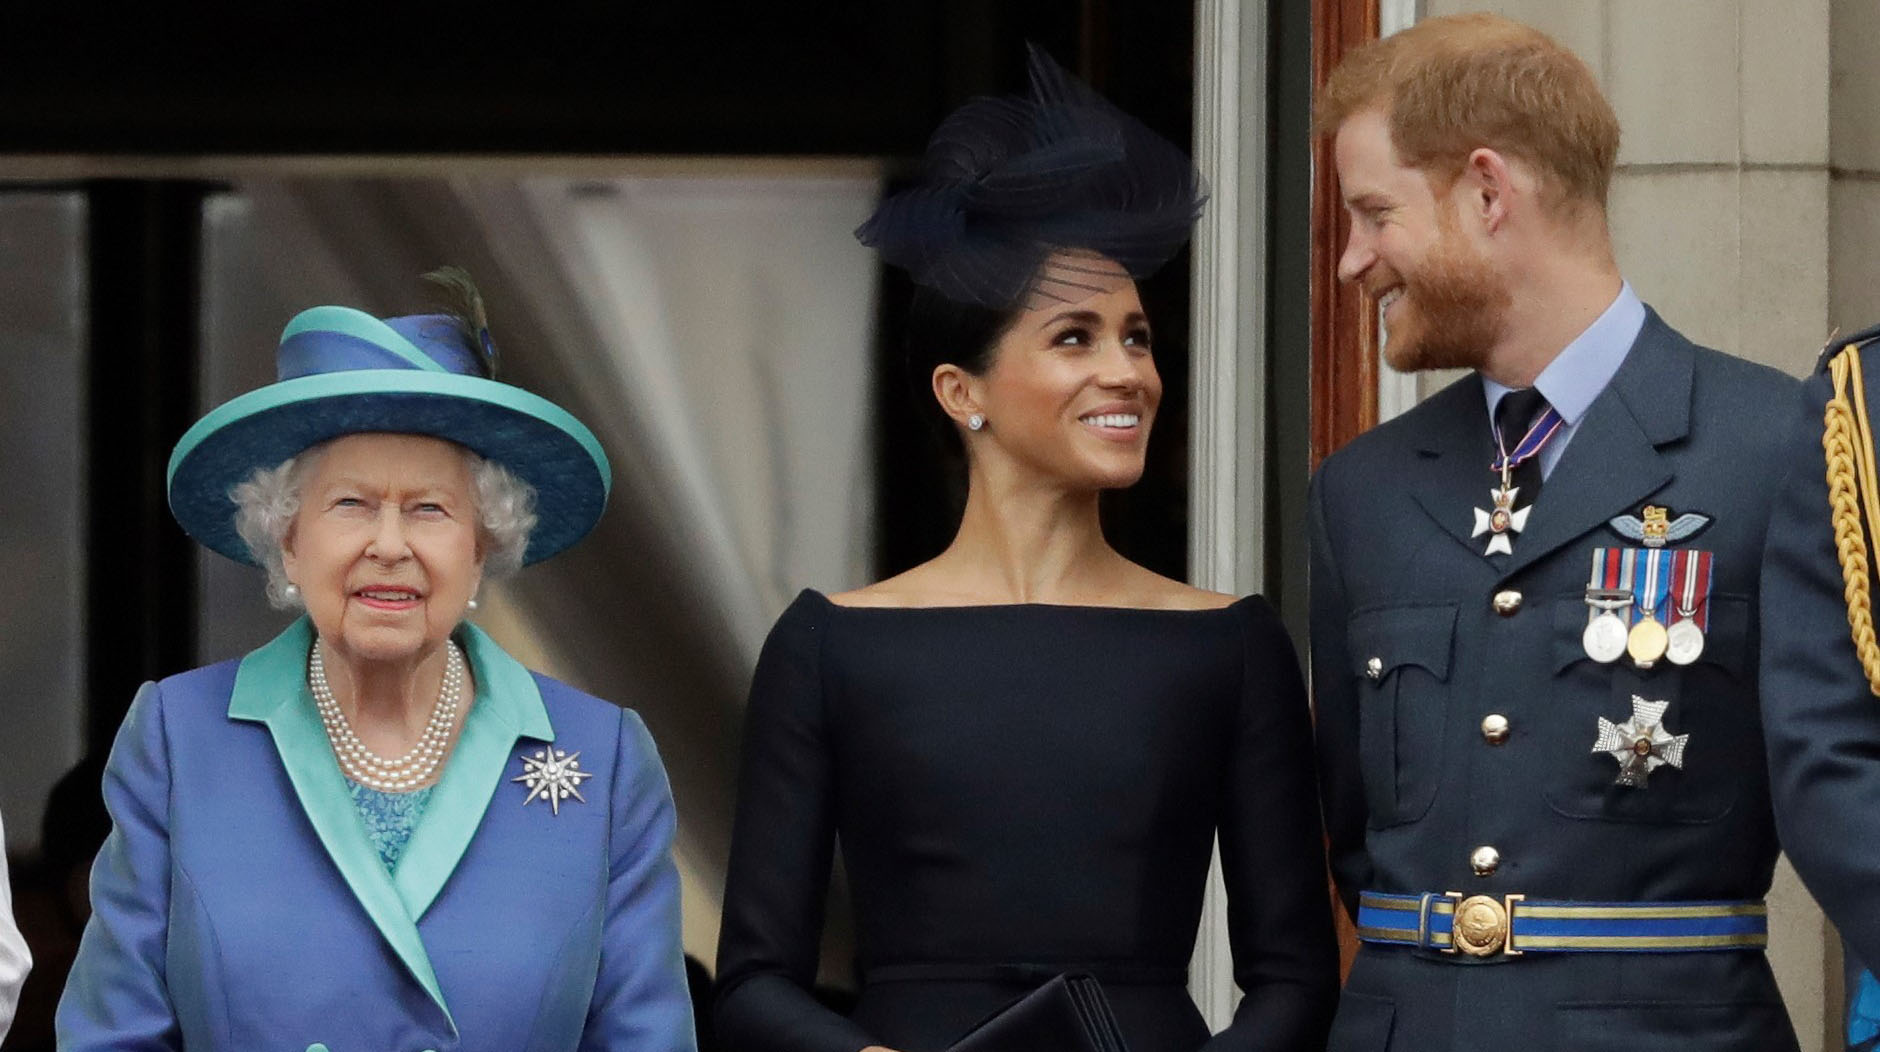 La reina Isabel II, Meghan Markle y el príncipe Harry, durante un evento real en 2018. (Foto: AP/Matt Dunham)